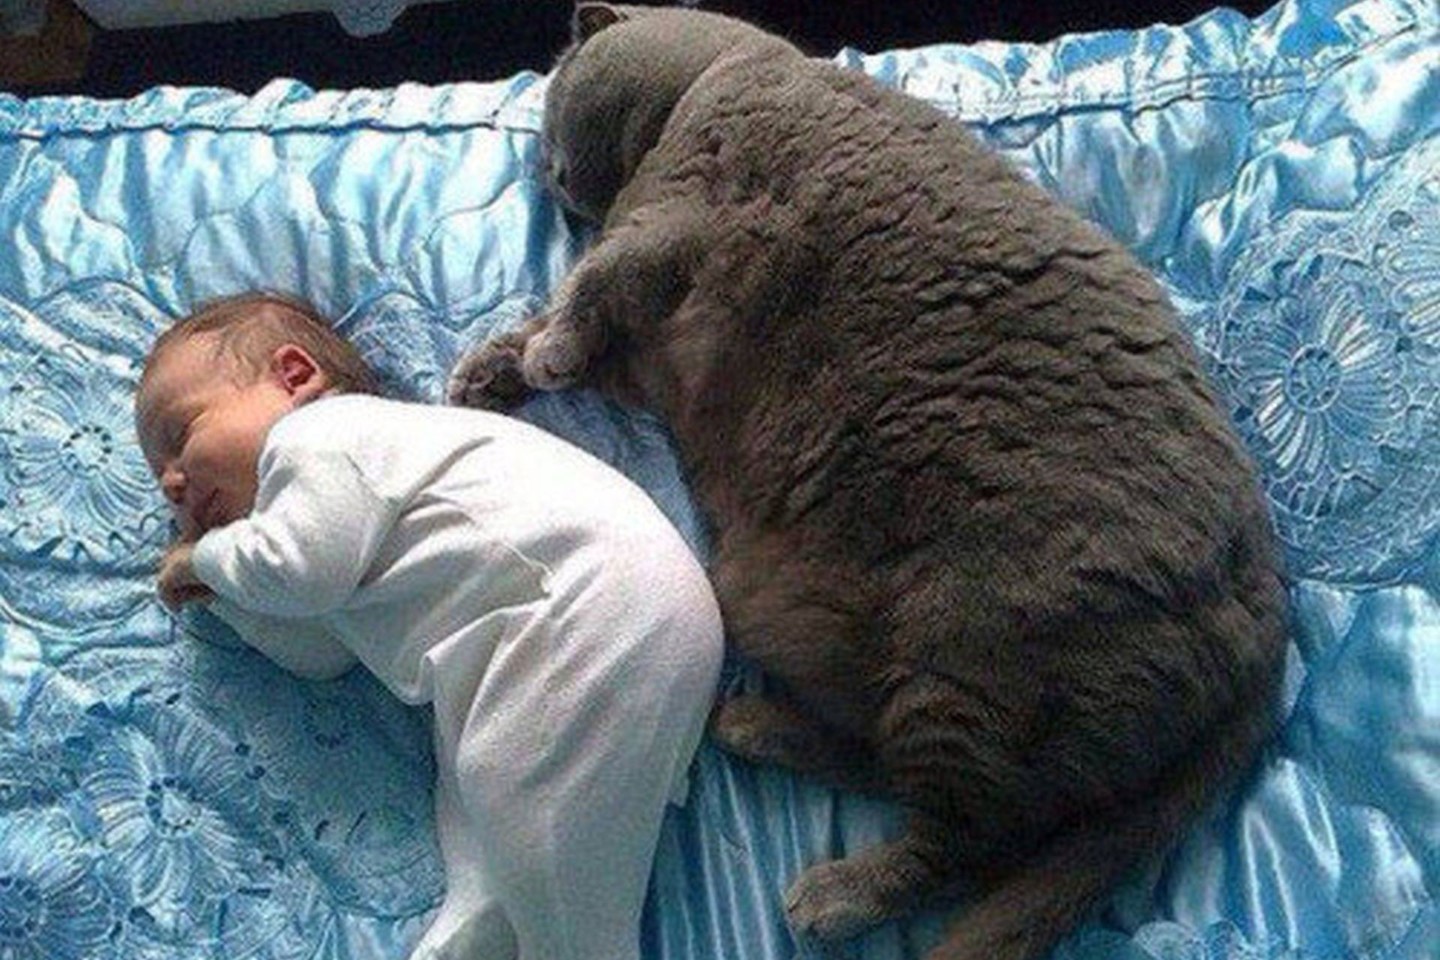 Net sunku patikėti, kad būna tokio dydžio kačių.<br>Imgur.com nuotr.